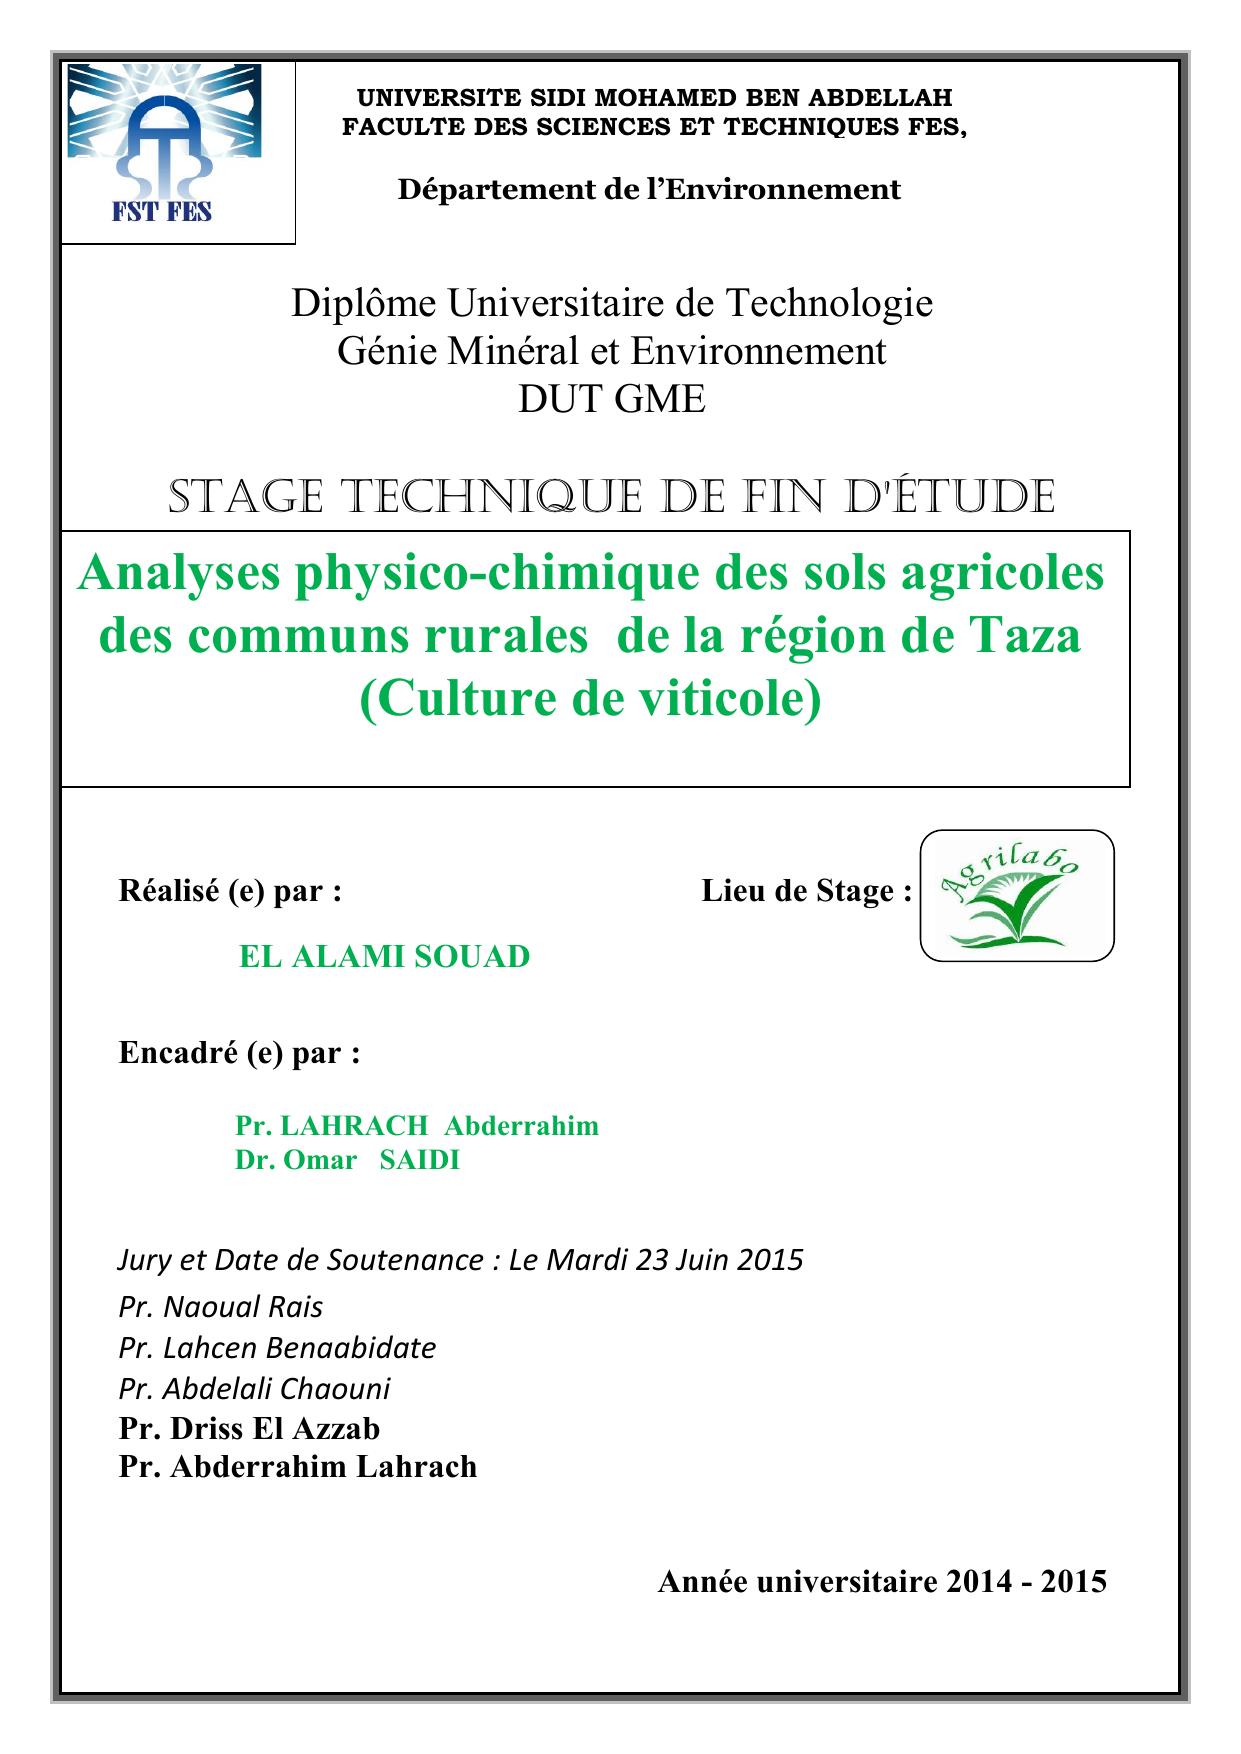 Analyses physico-chimique des sols agricoles des communs rurales de la région de Taza (Culture de viticole)